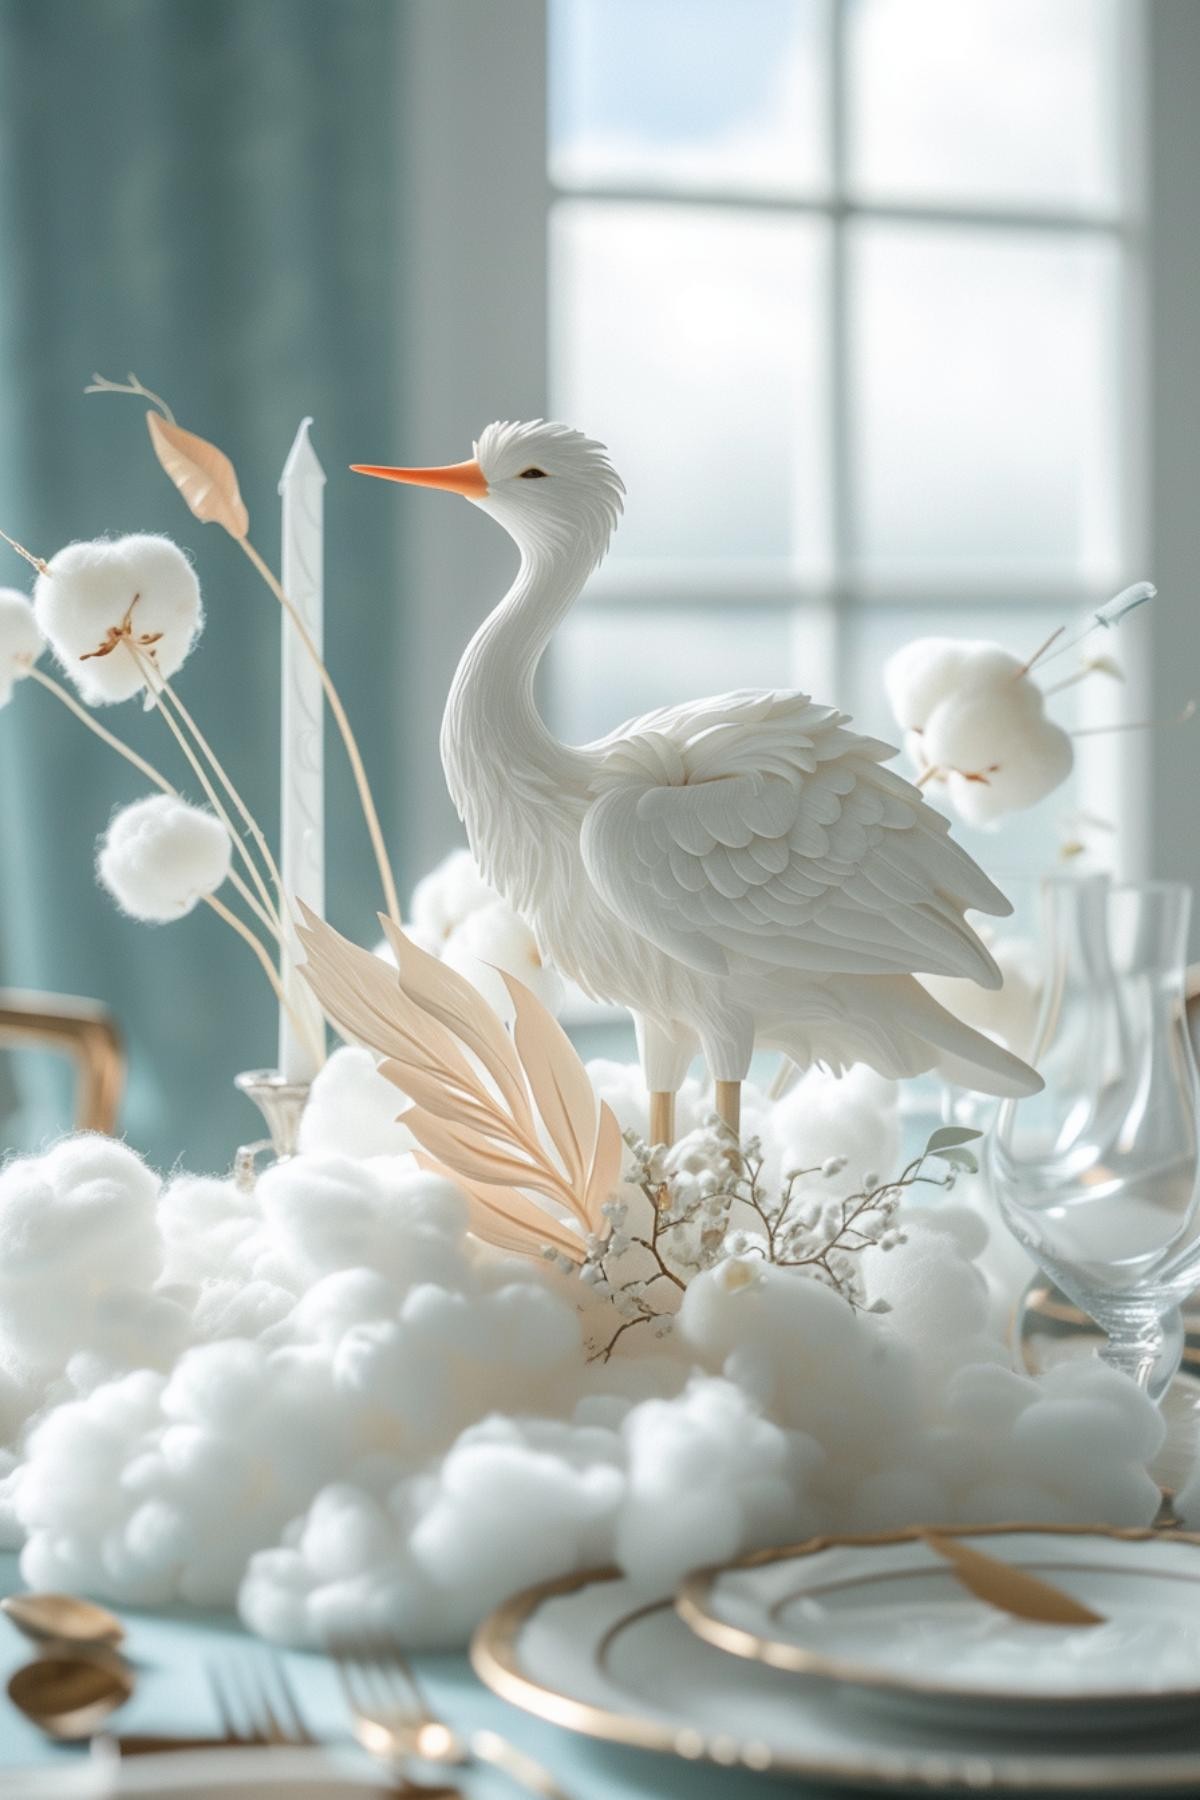 Stork’s Cloud Haven